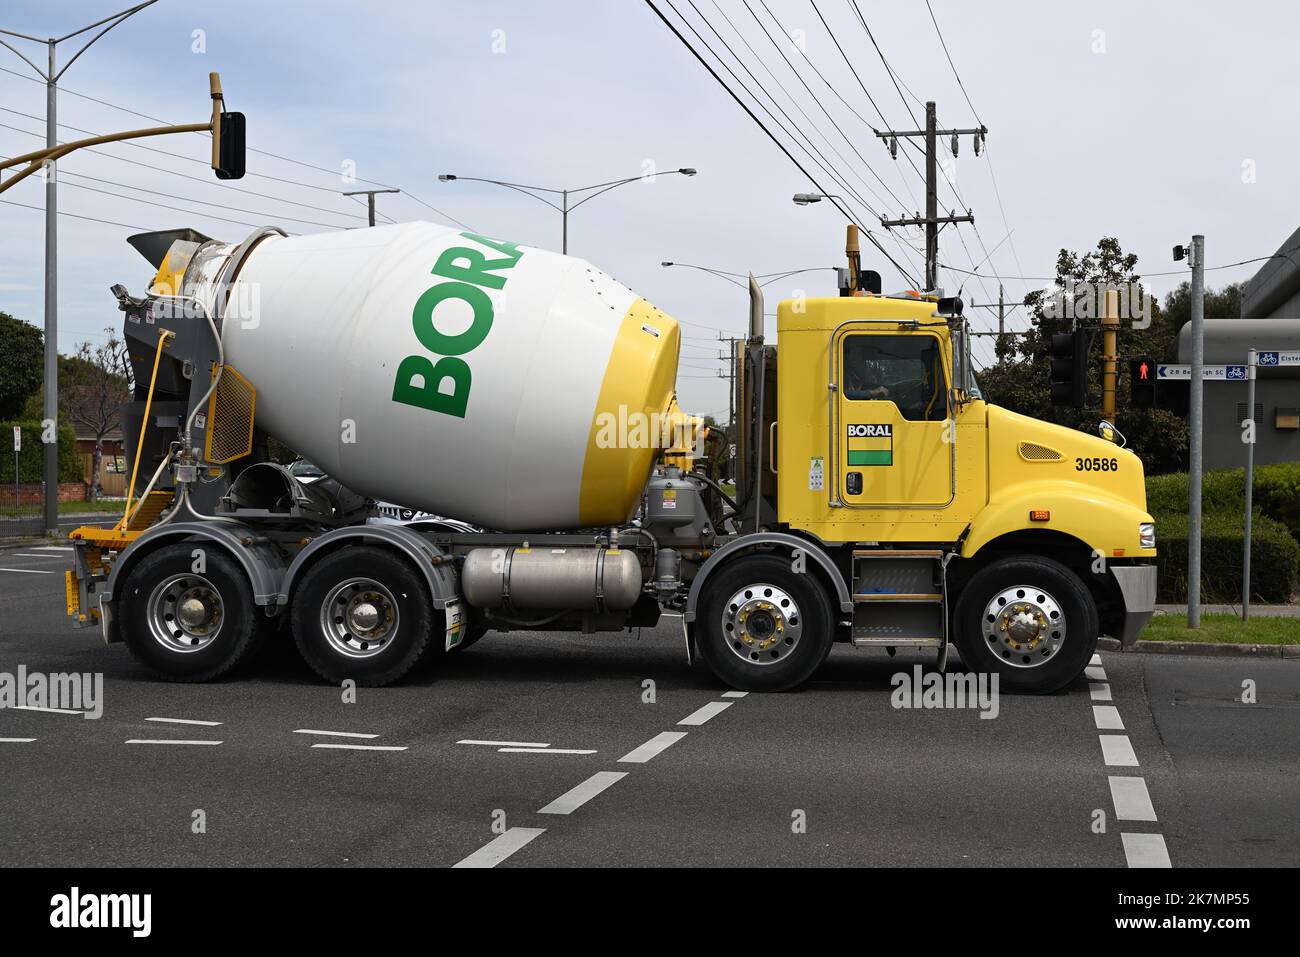 Côté d'un mélangeur de ciment Boral jaune, blanc et vert, qui s'arrête sur North Rd dans la banlieue de Melbourne Banque D'Images